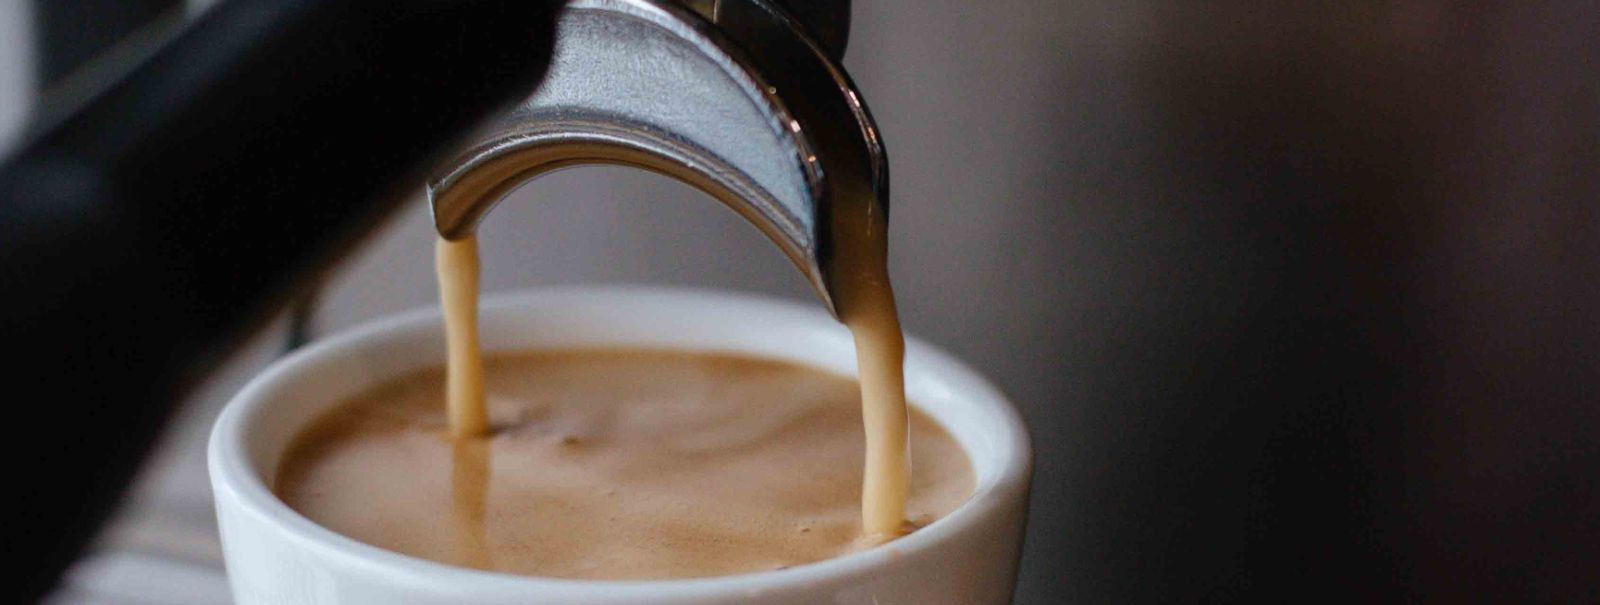 Kohvisõpradele ja professionaalidele on kohvimasin kohvielamuse ...